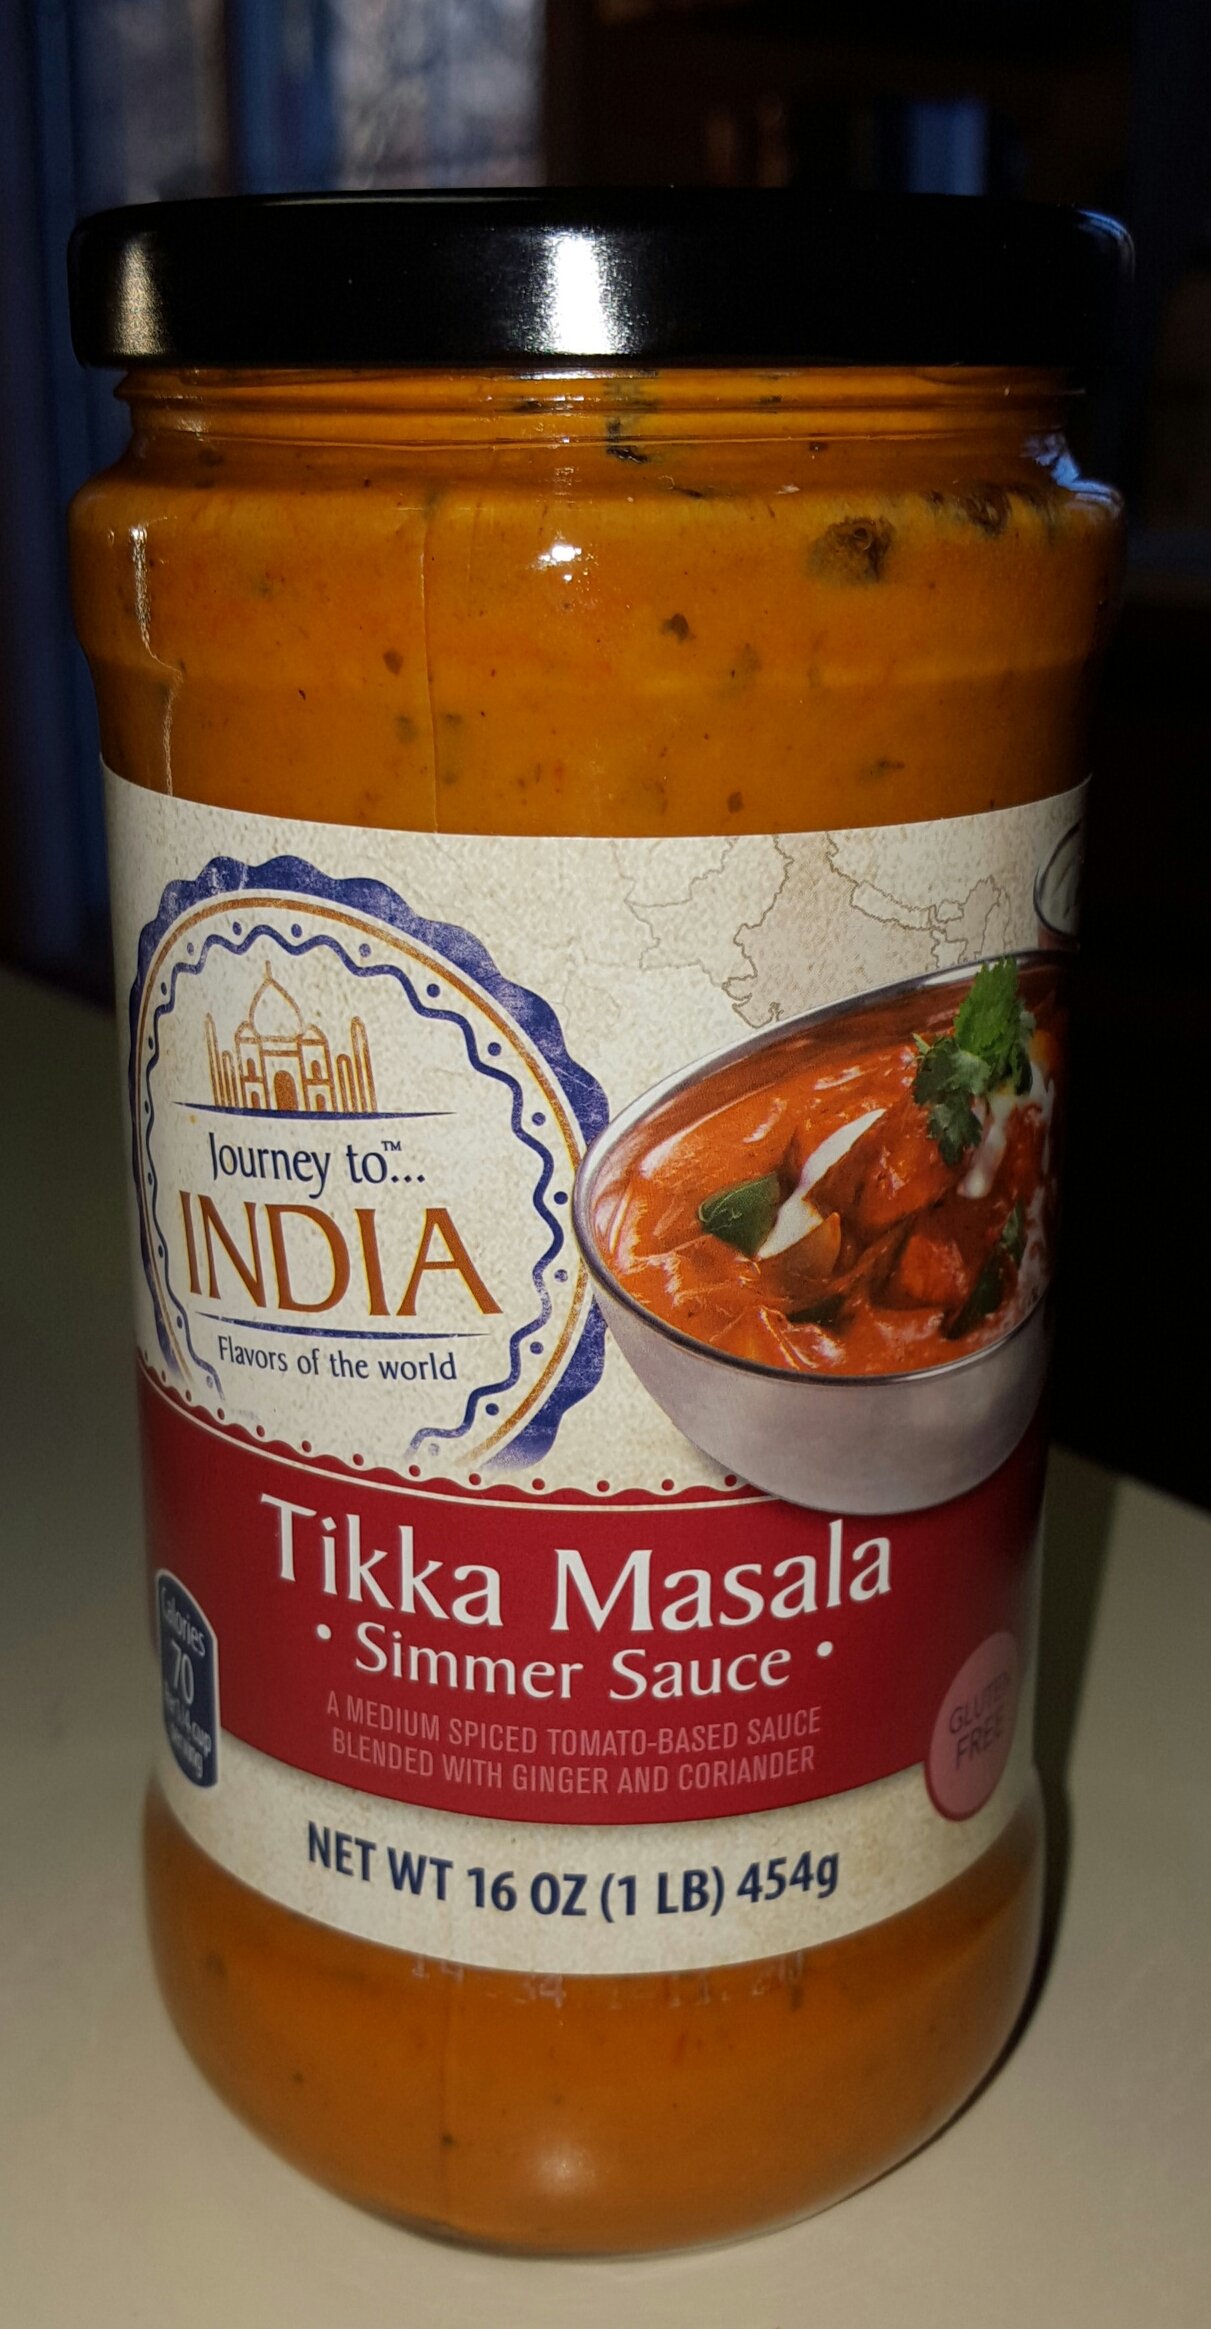 Journey to India Tikka Masala Simmer Sauce